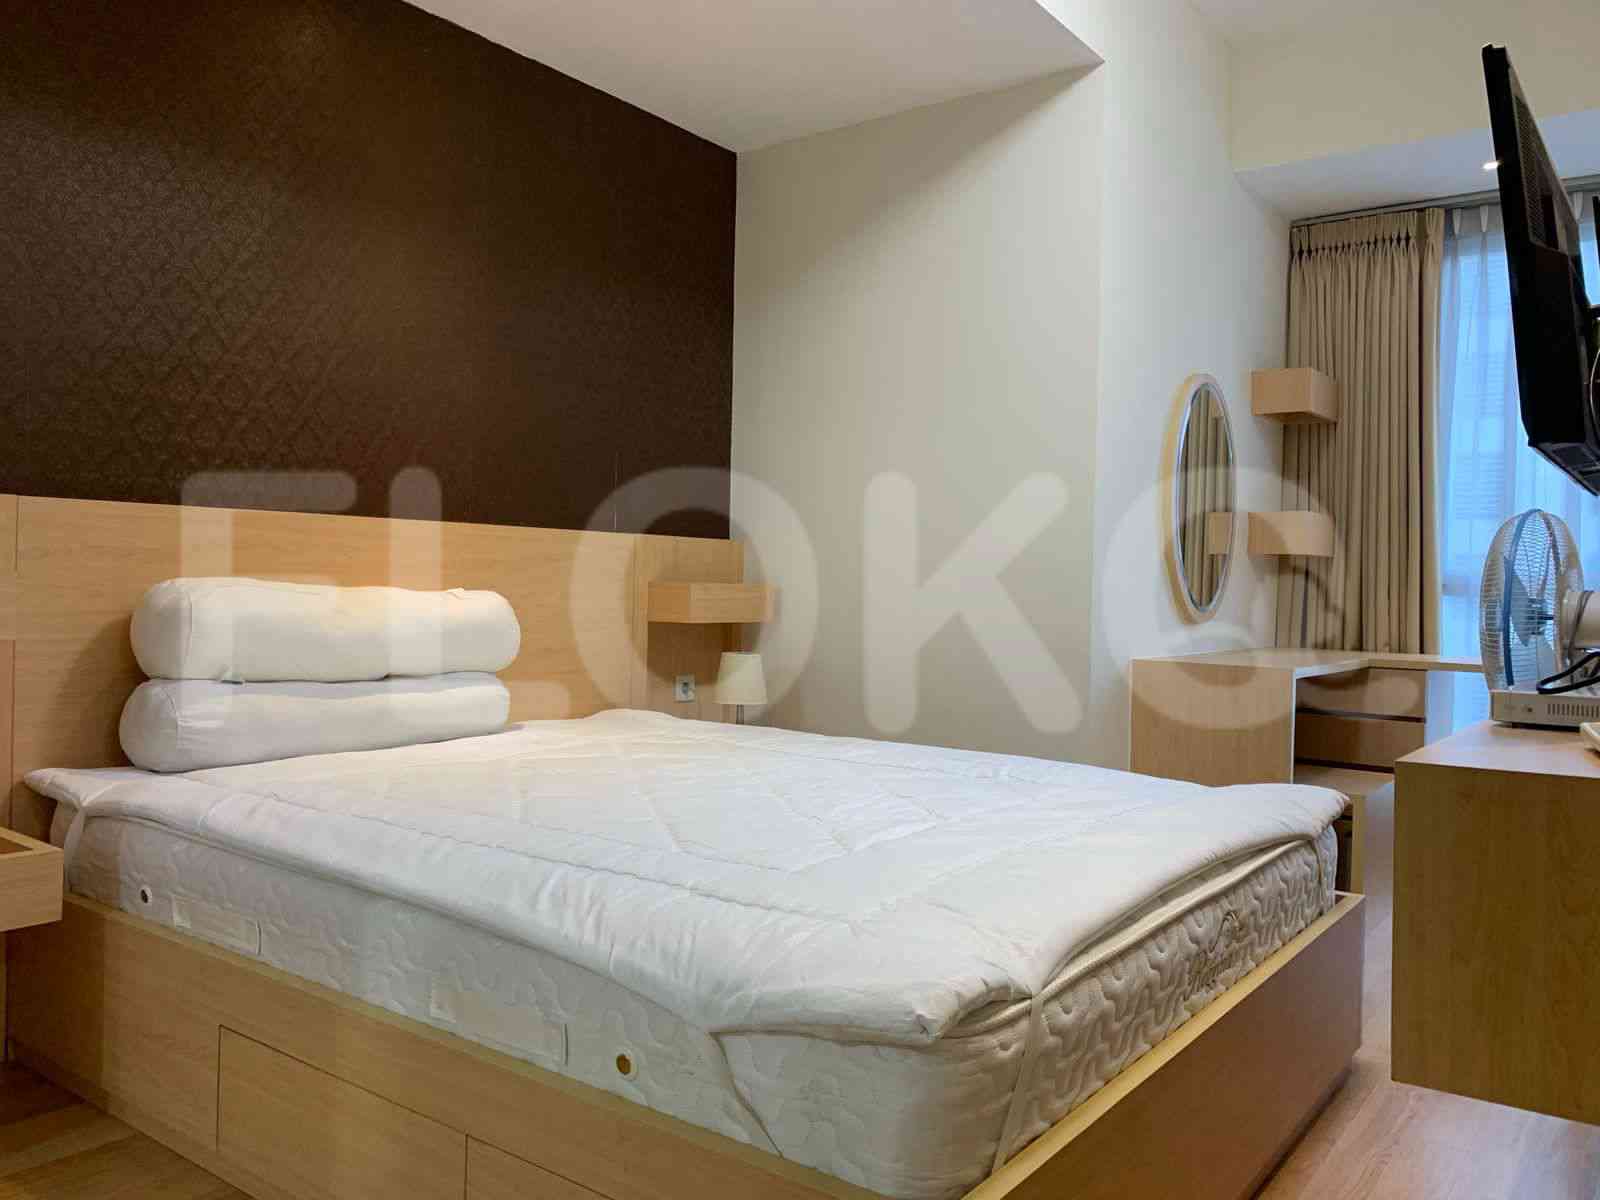 2 Bedroom on 8th Floor for Rent in Casa Grande - fte526 3